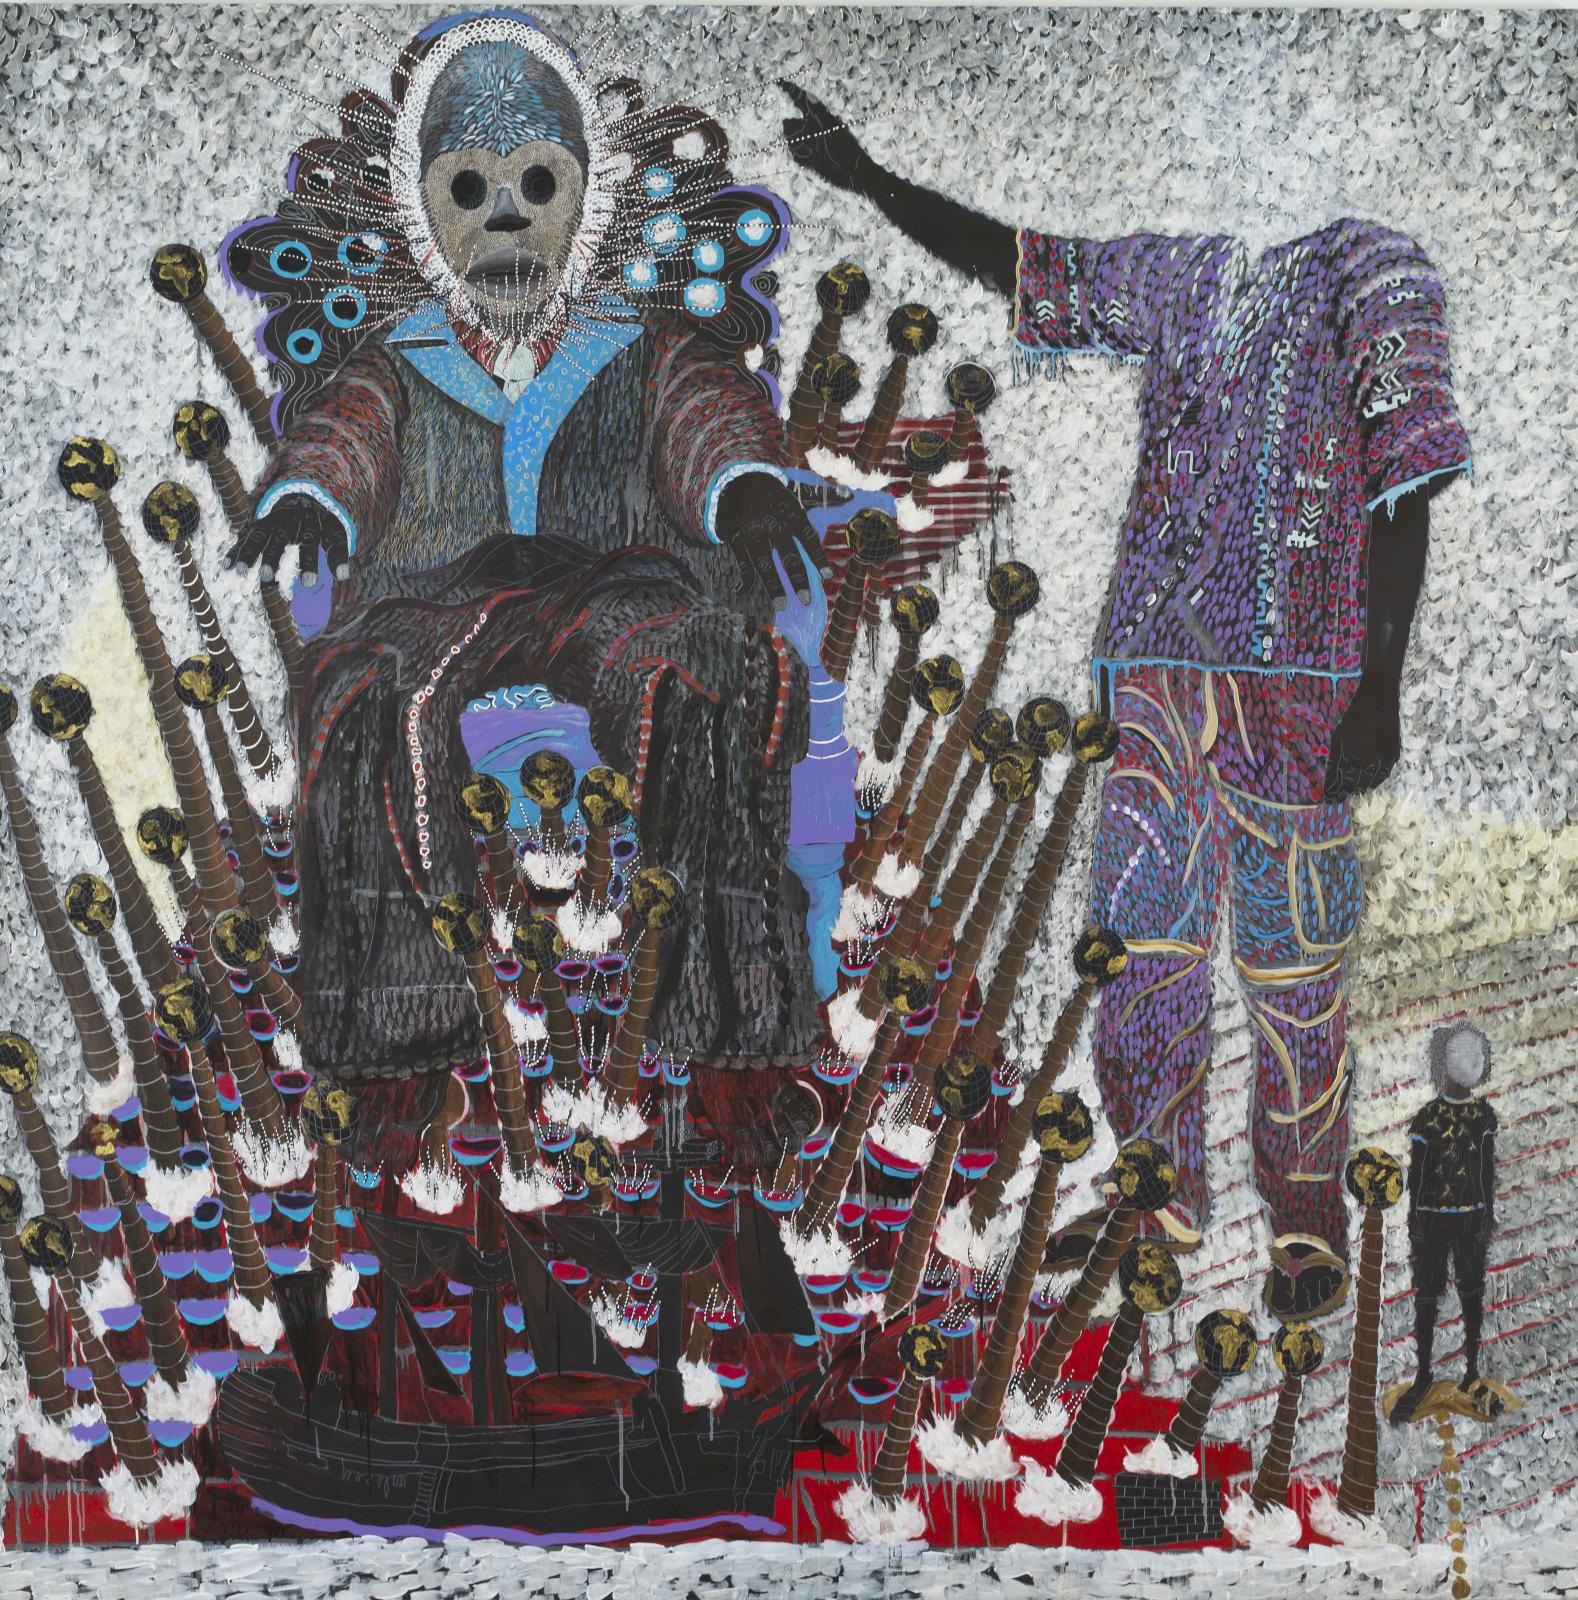 Omar Ba (né en 1977), Promenade masquée 2, 2016, huile, acrylique, gouache et crayon sur toile, 200 x 200 cm. Galerie Templon. Courtesy Galerie Daniel